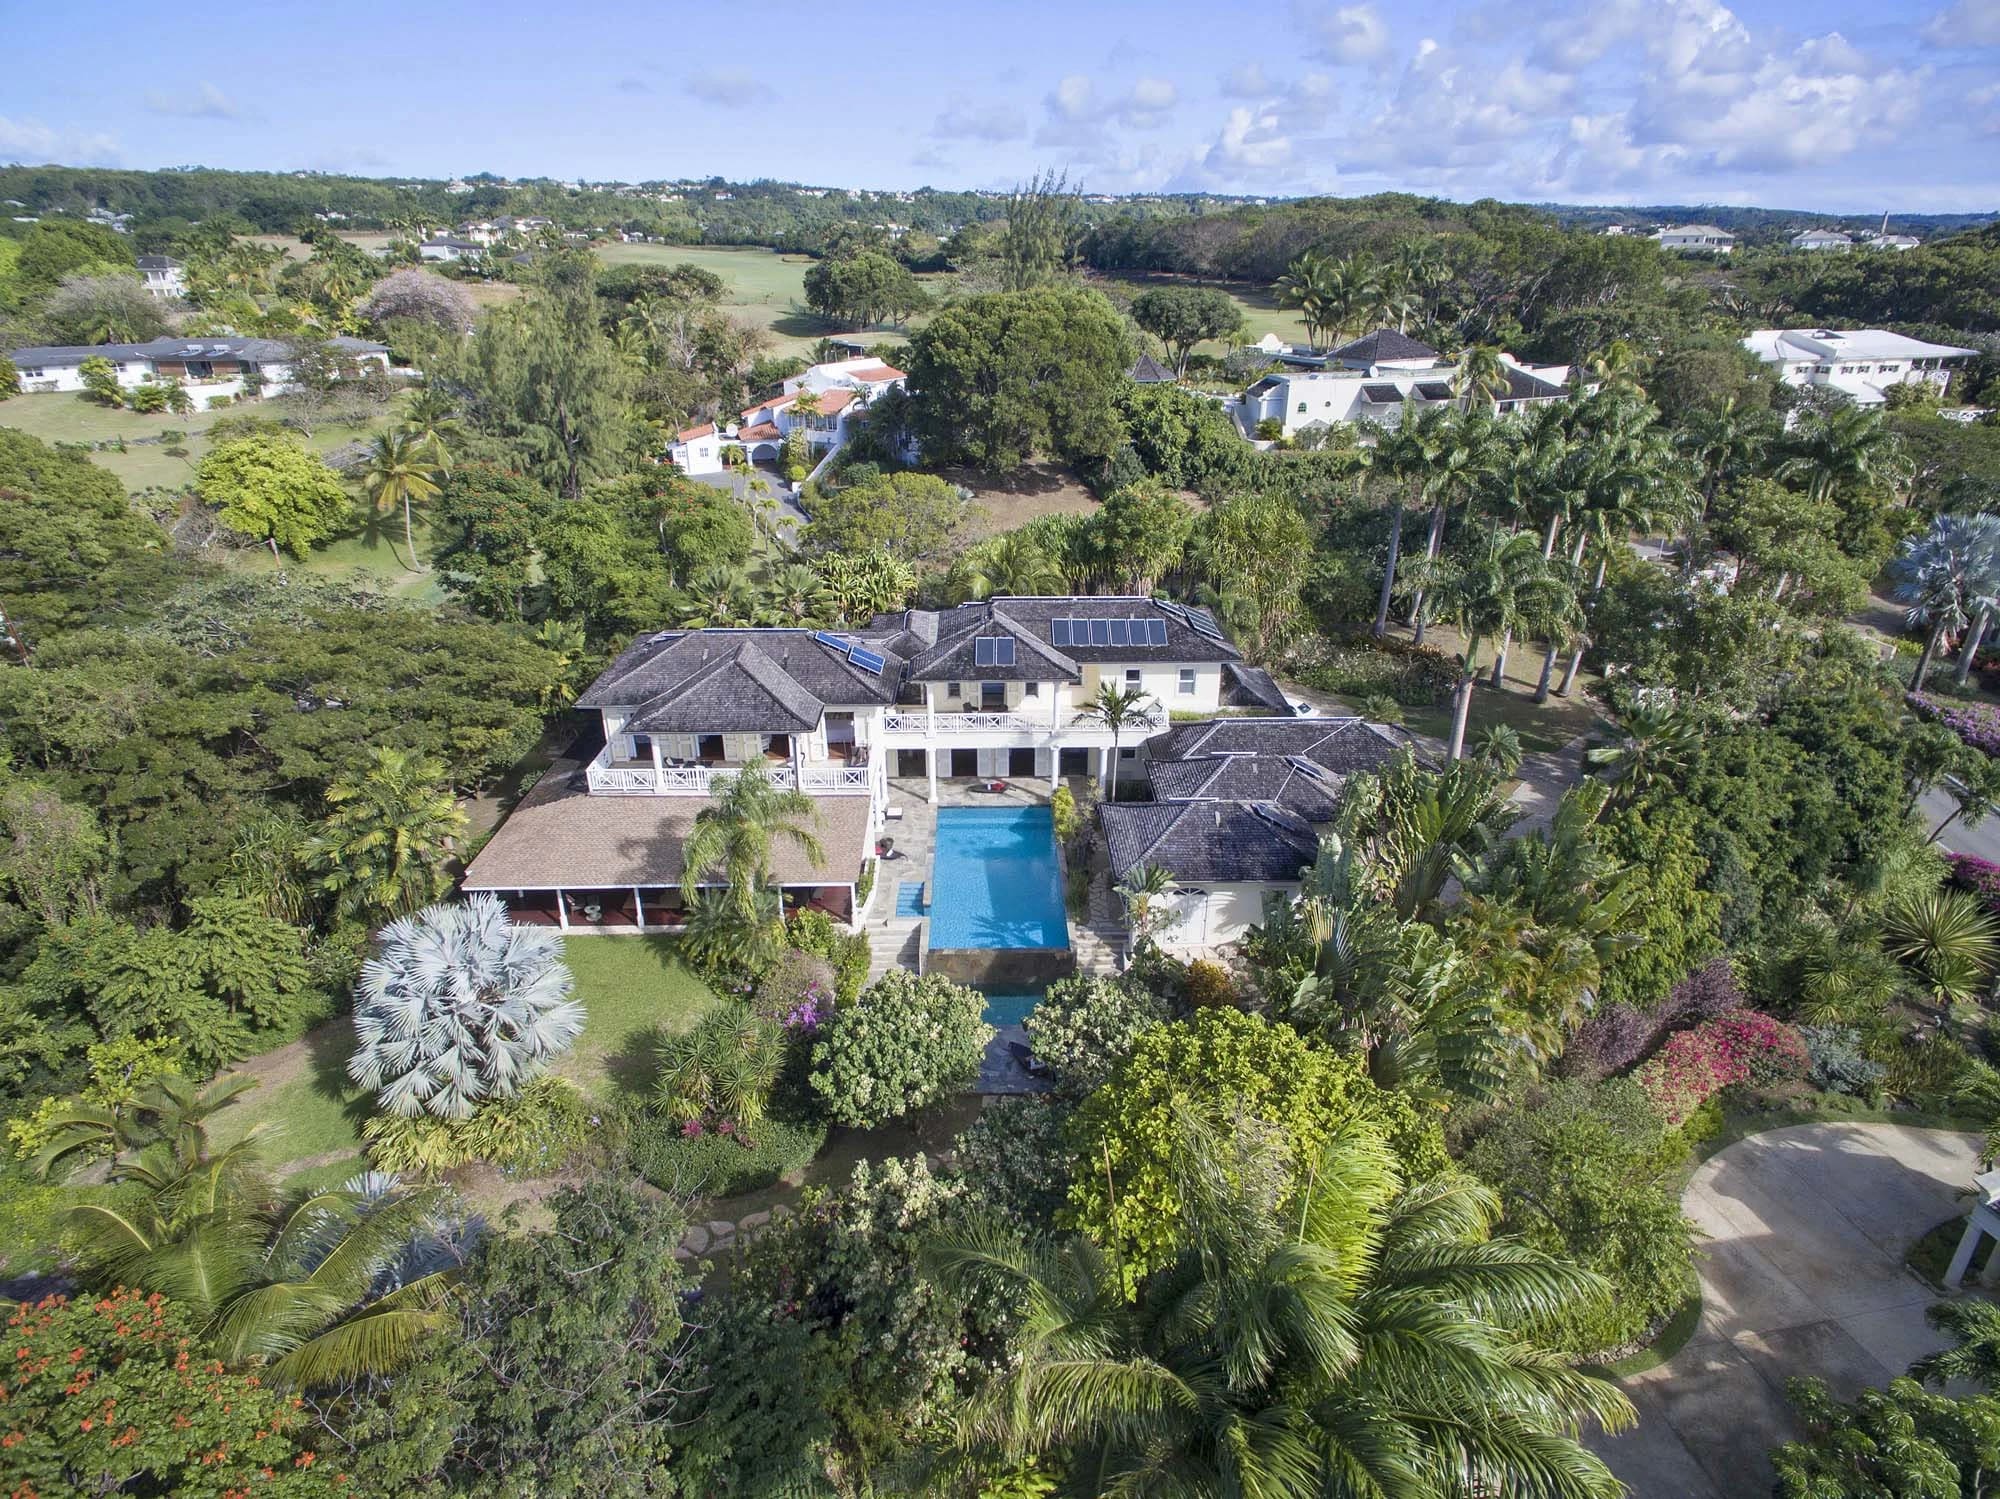 Villa Alba | St. James, Barbados | Luxury Real Estate